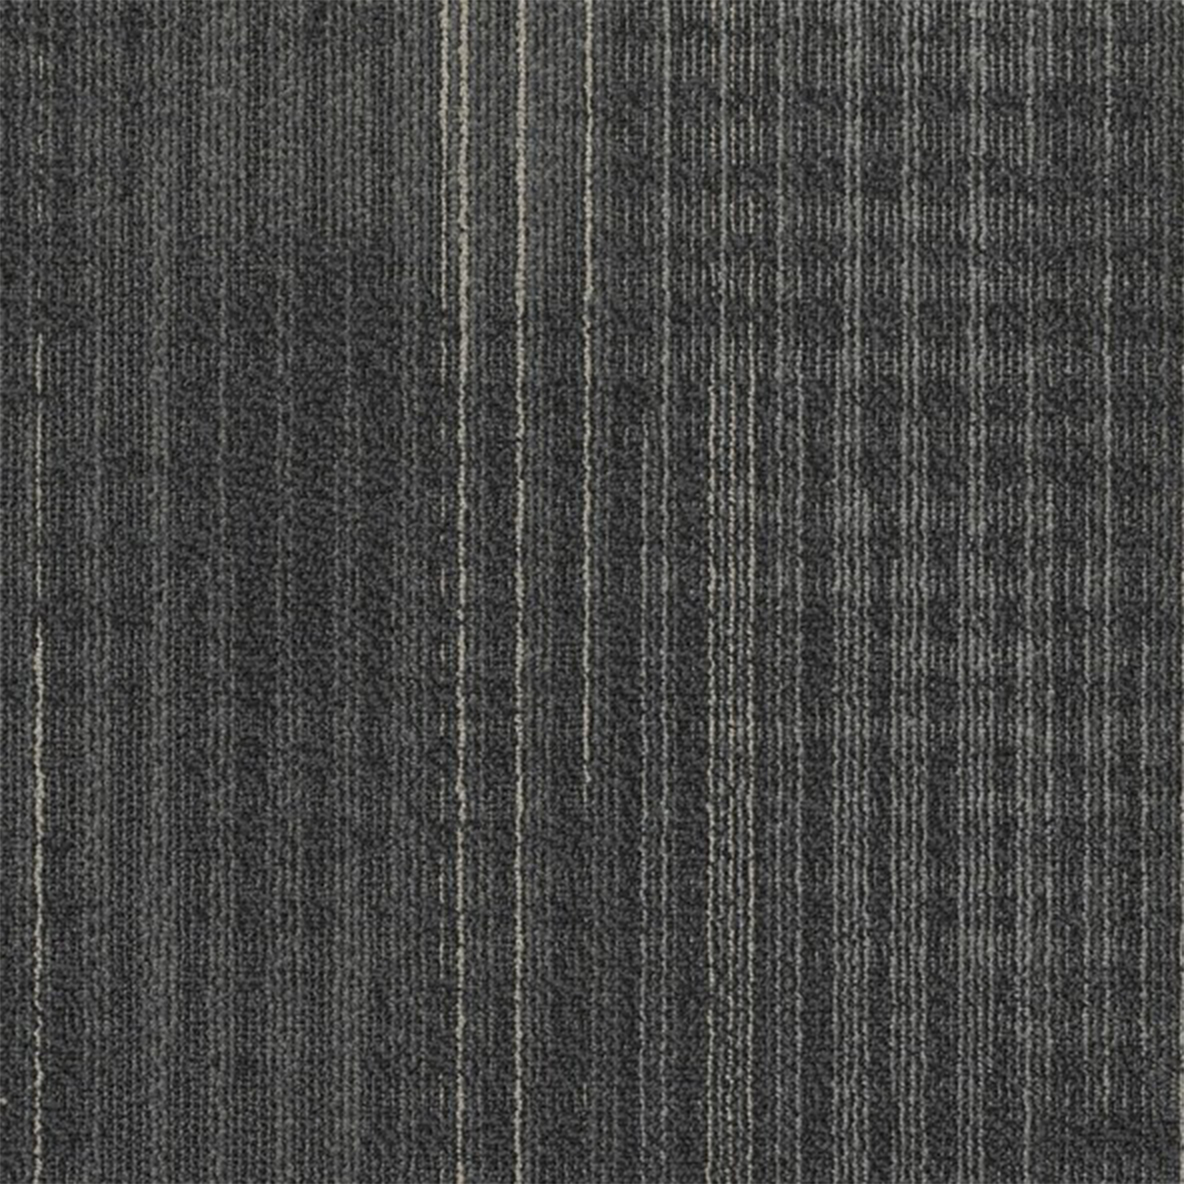 Carbon color close up Nexus Commercial Carpet Tile .42 Inch x 50x50 cm per Tile